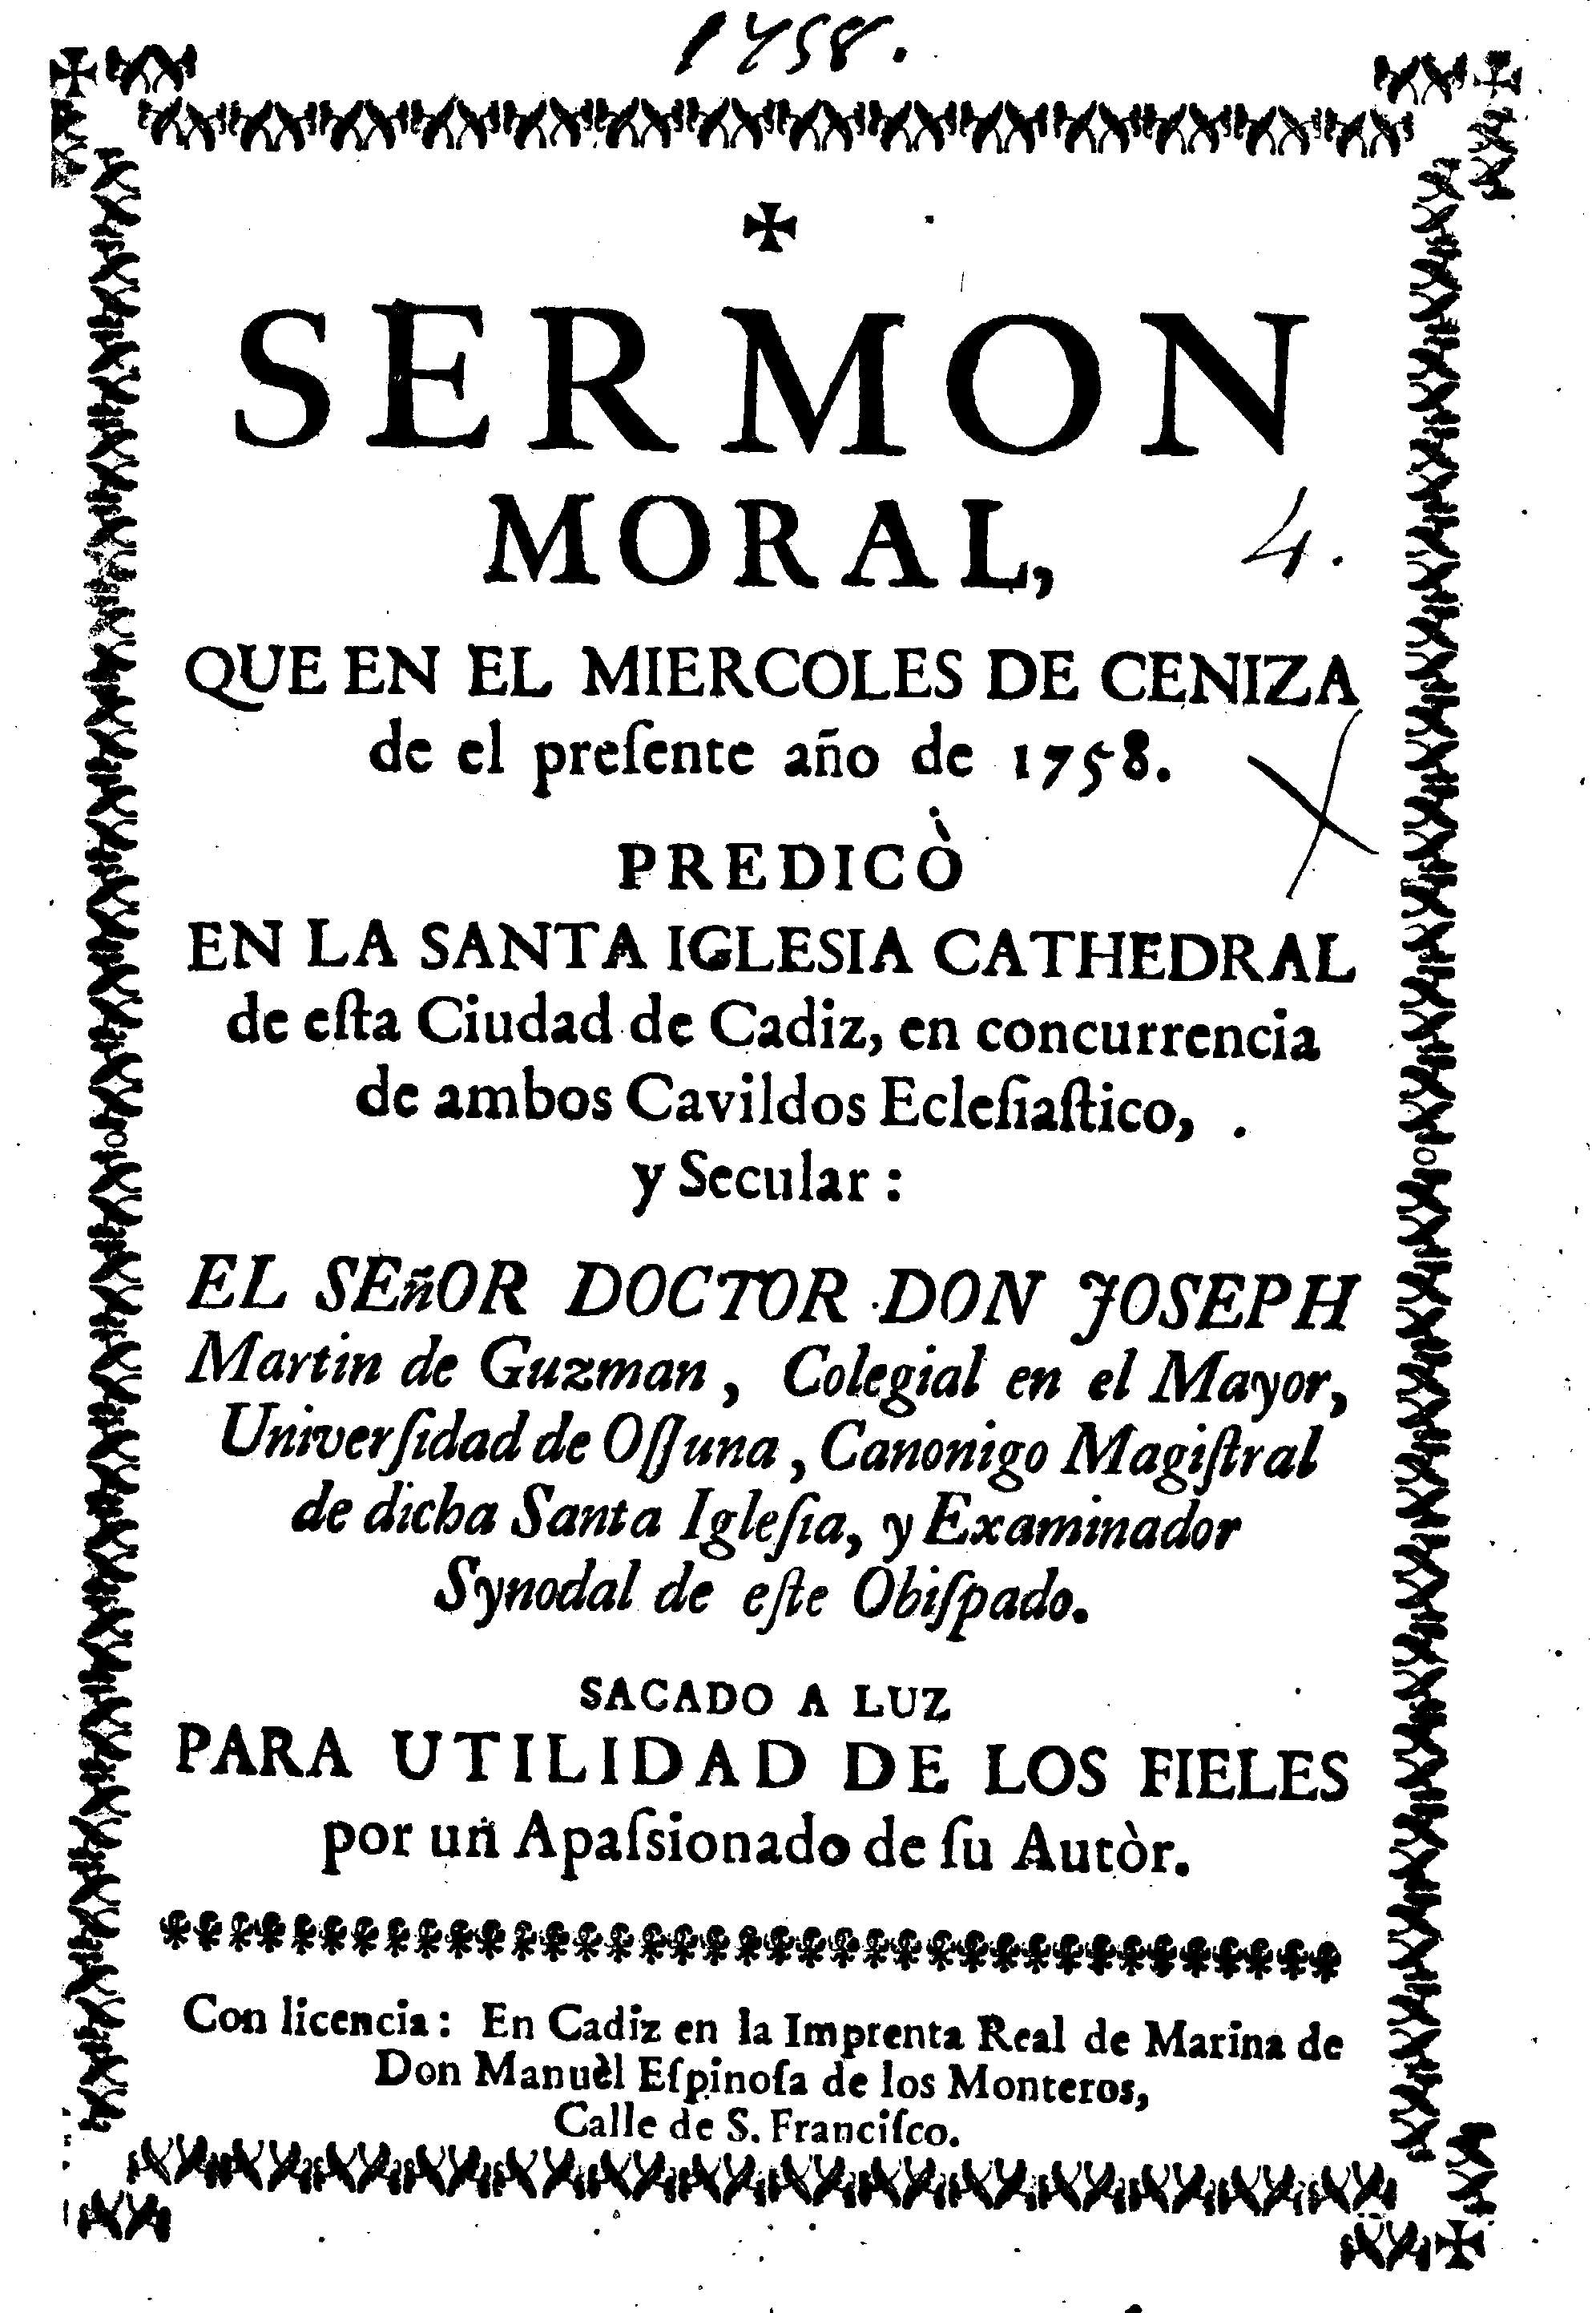 Sermon moral, que en el miercoles de ceniza de el presente año de 1758 ...